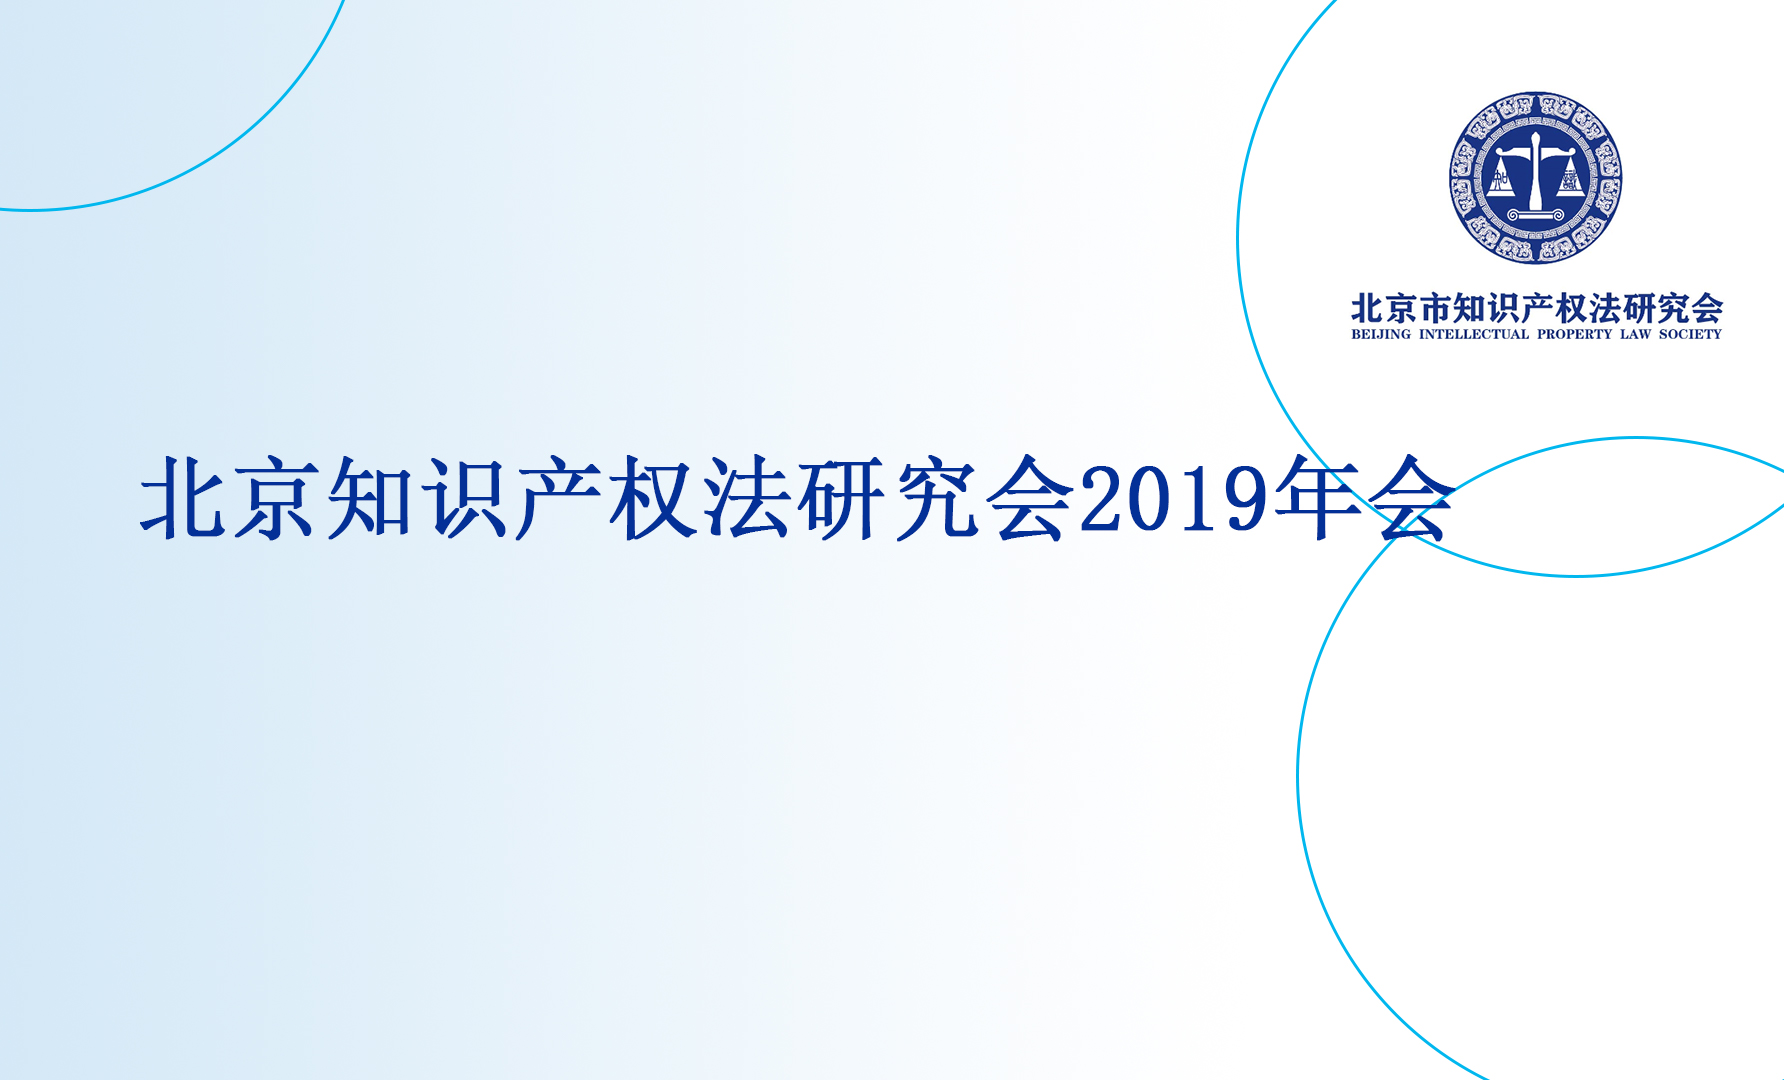 北京知识产权法研究会第二届第二次会员大会暨2019年年会